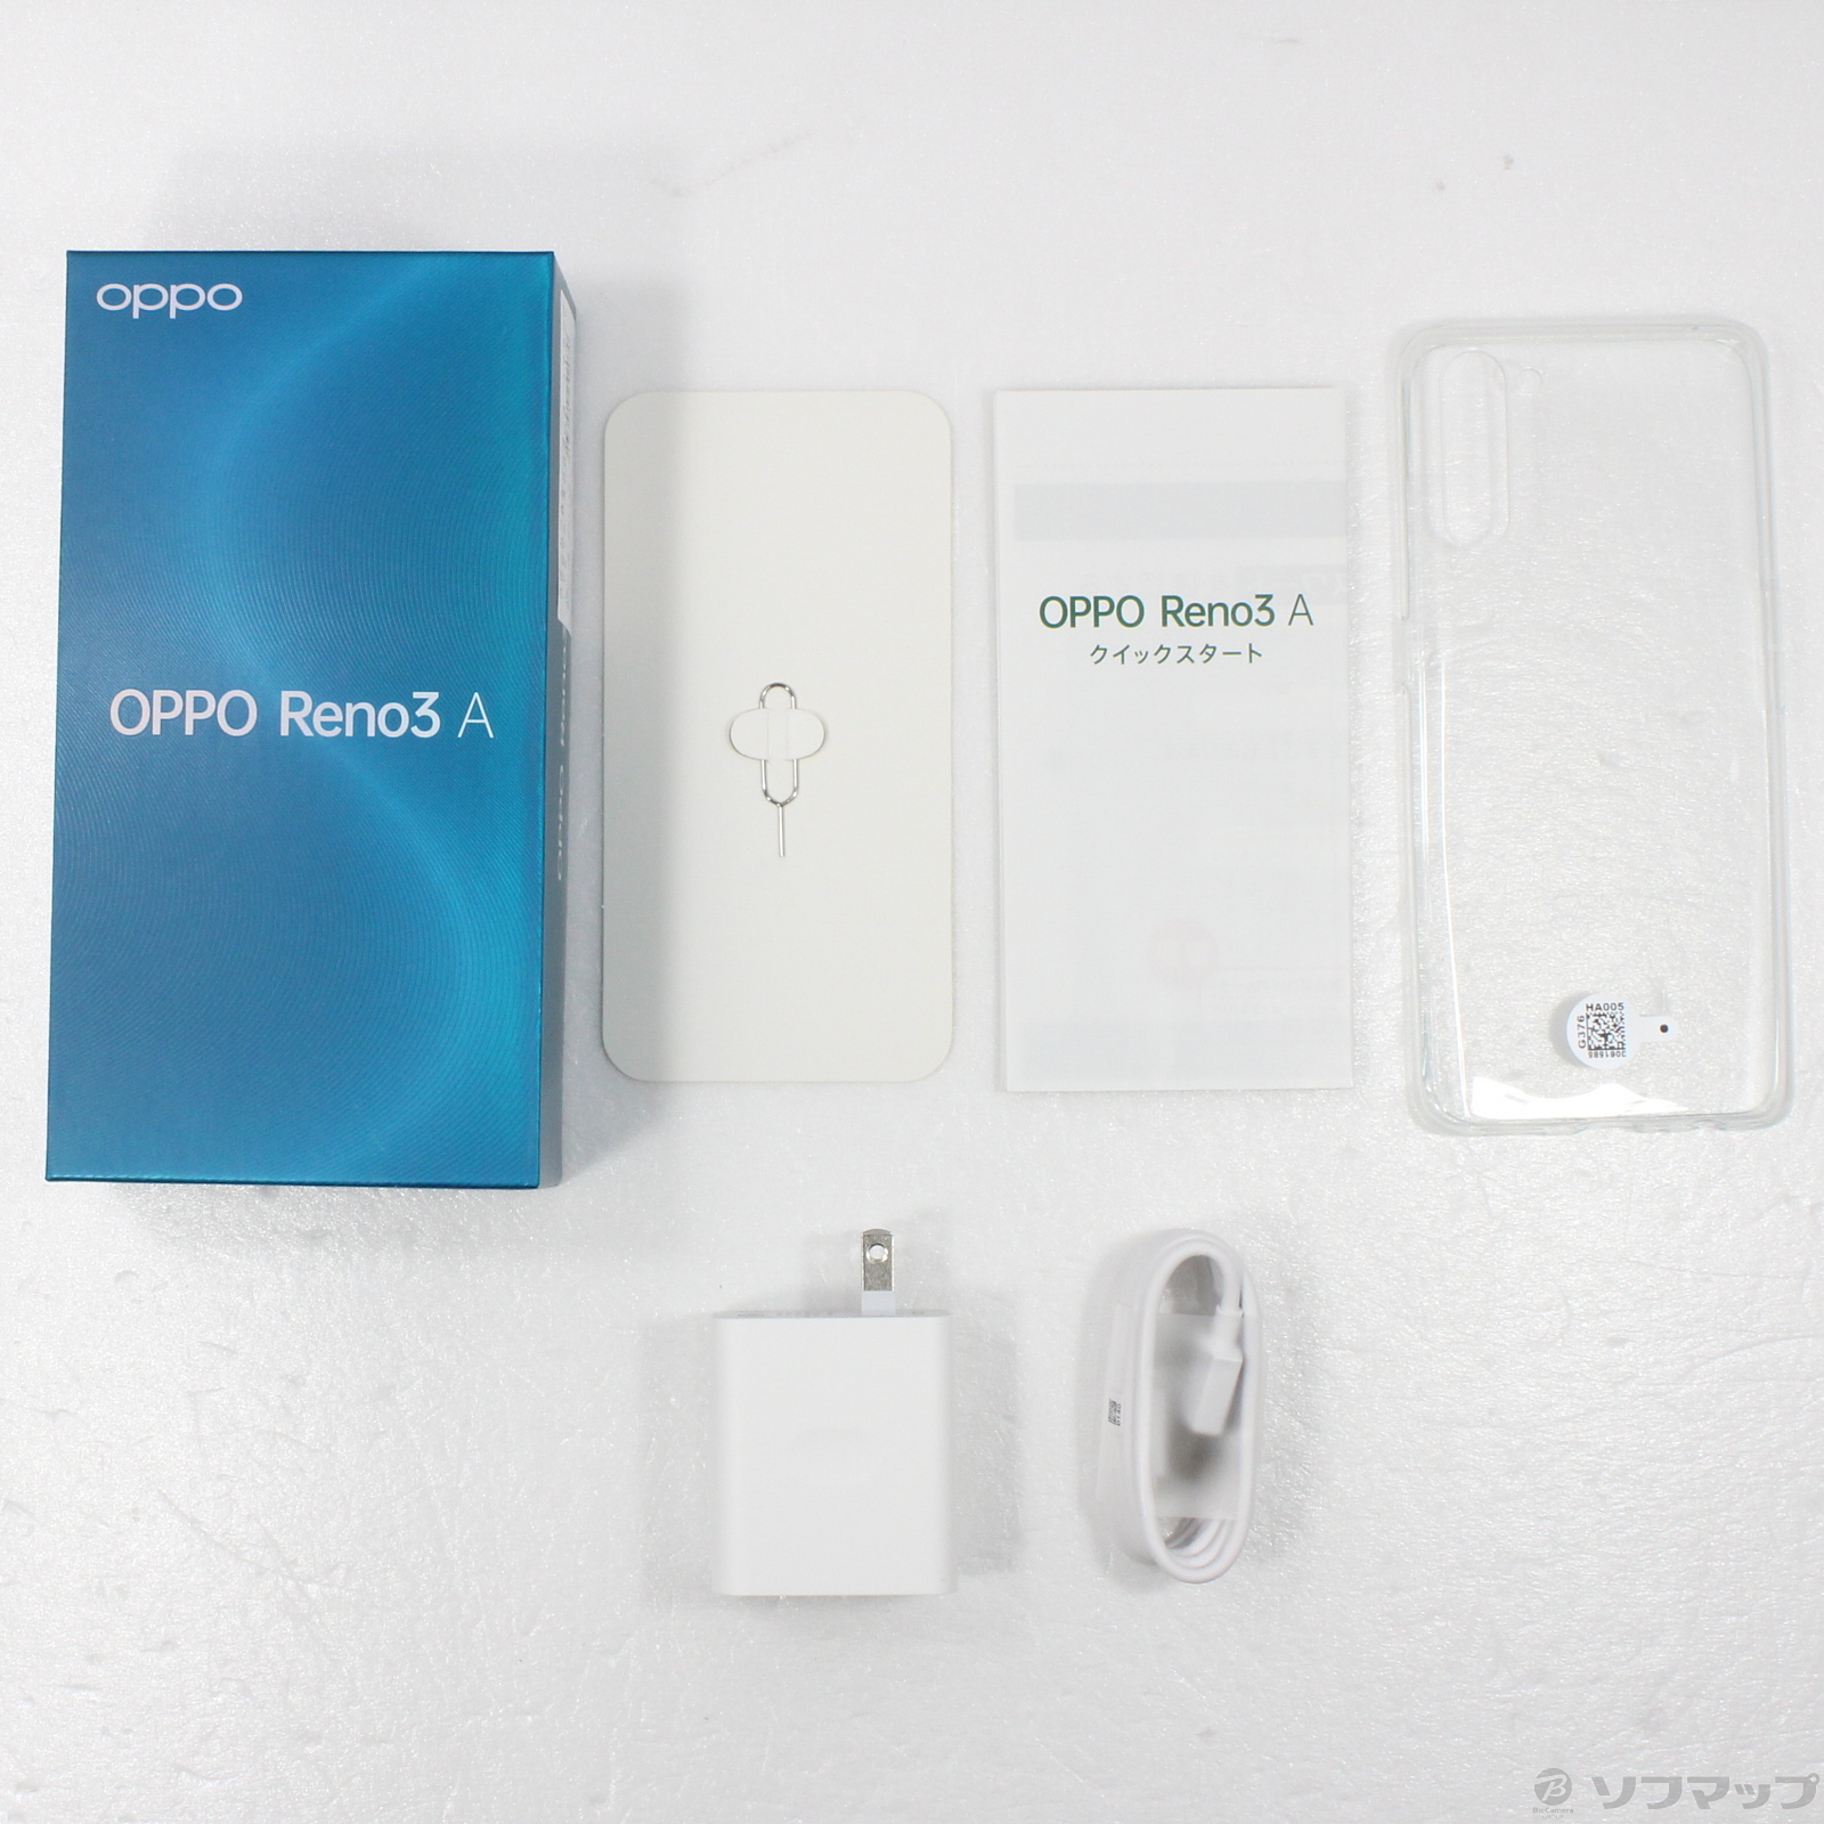 スマートフォン/携帯電話OPPO Reno3 A ブラック 128GB